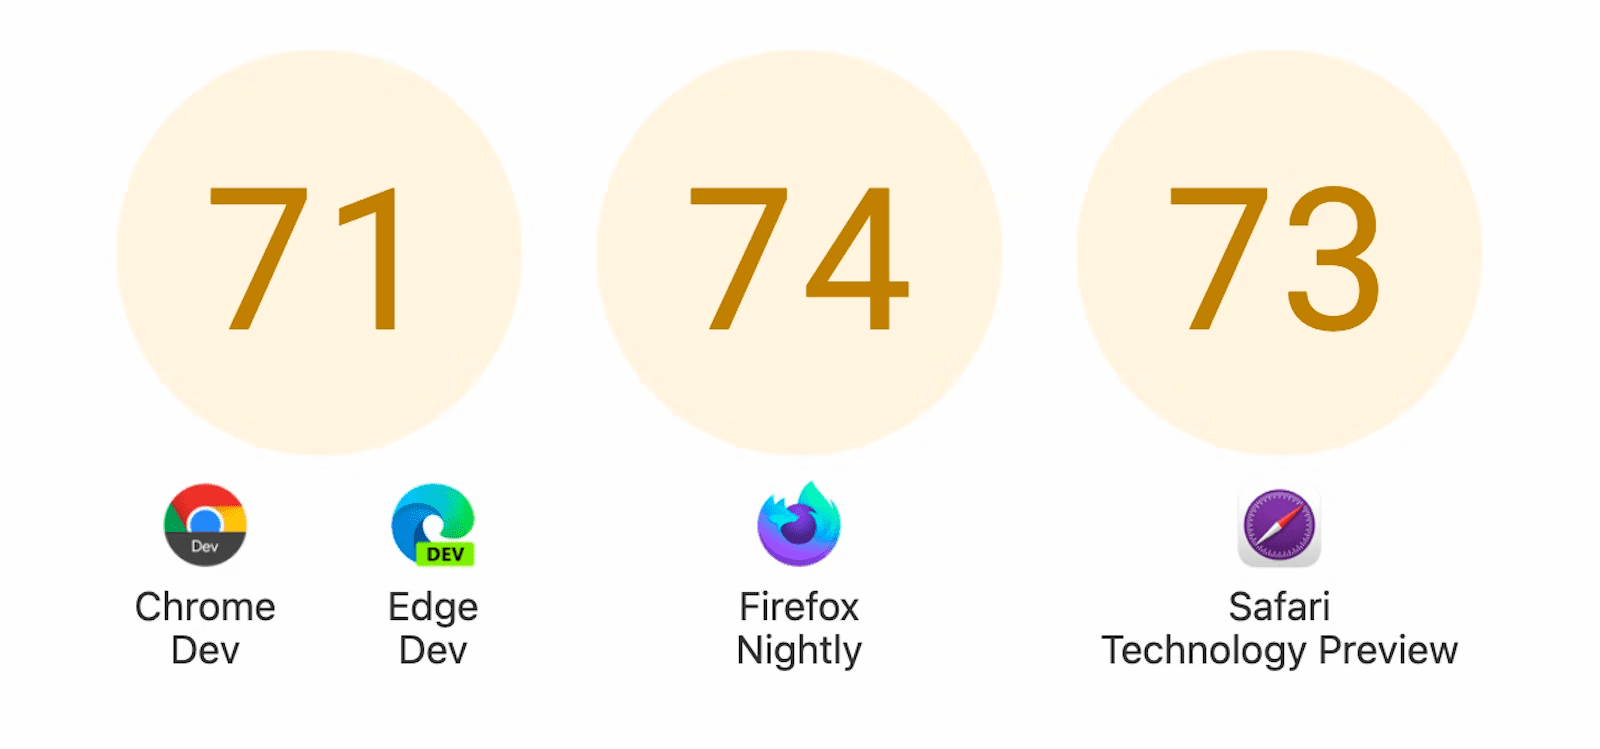 下方显示了三个圆圈，得分分别为：Chrome 开发者版和 Edge Dev 的 71 分、Firefox Nightly 74 分以及 73 分的 Safari 技术预览版。